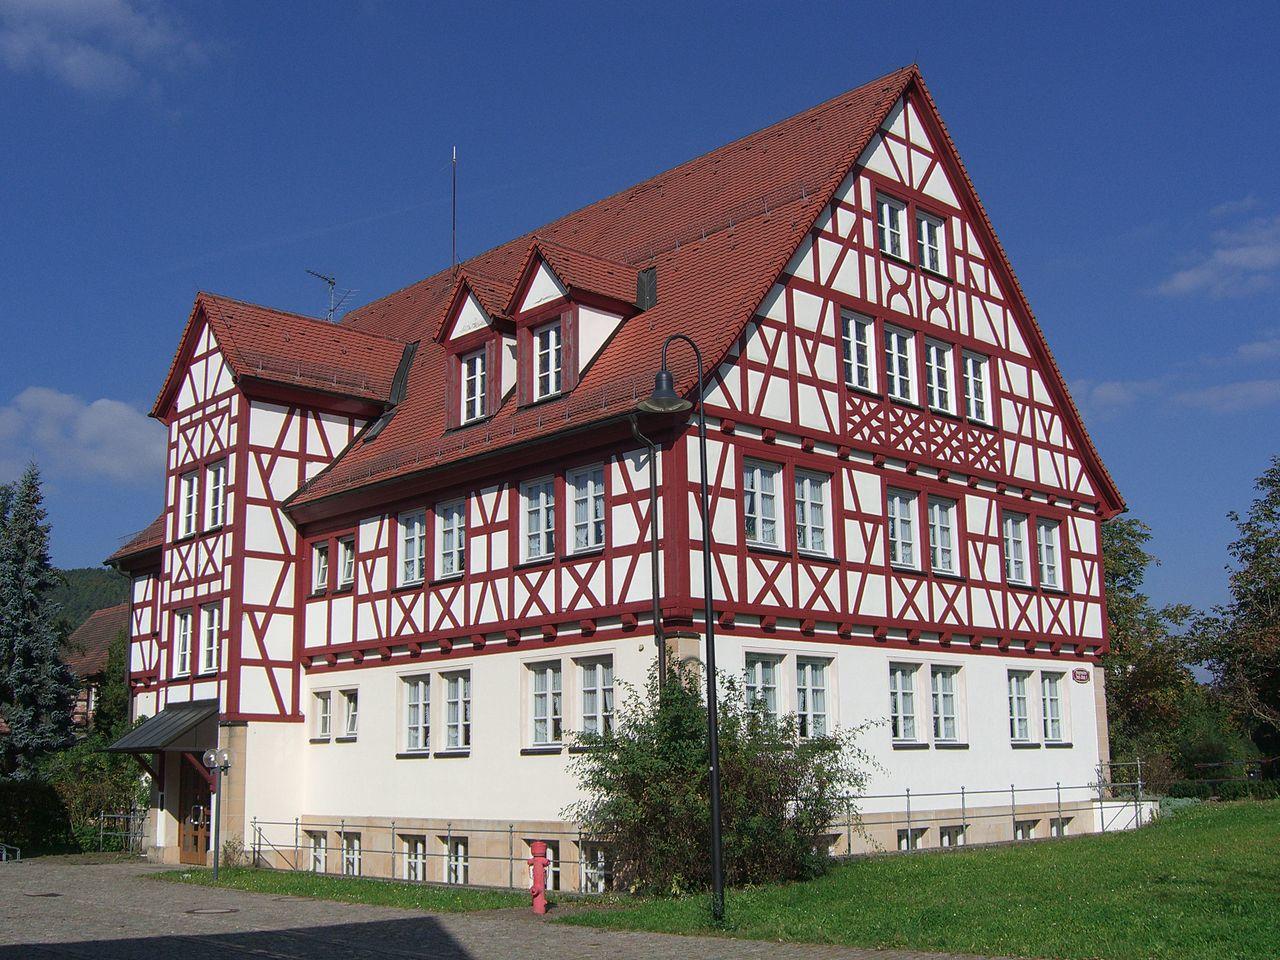 Bild vergrößern: Ansicht Rathaus vom Innenhof